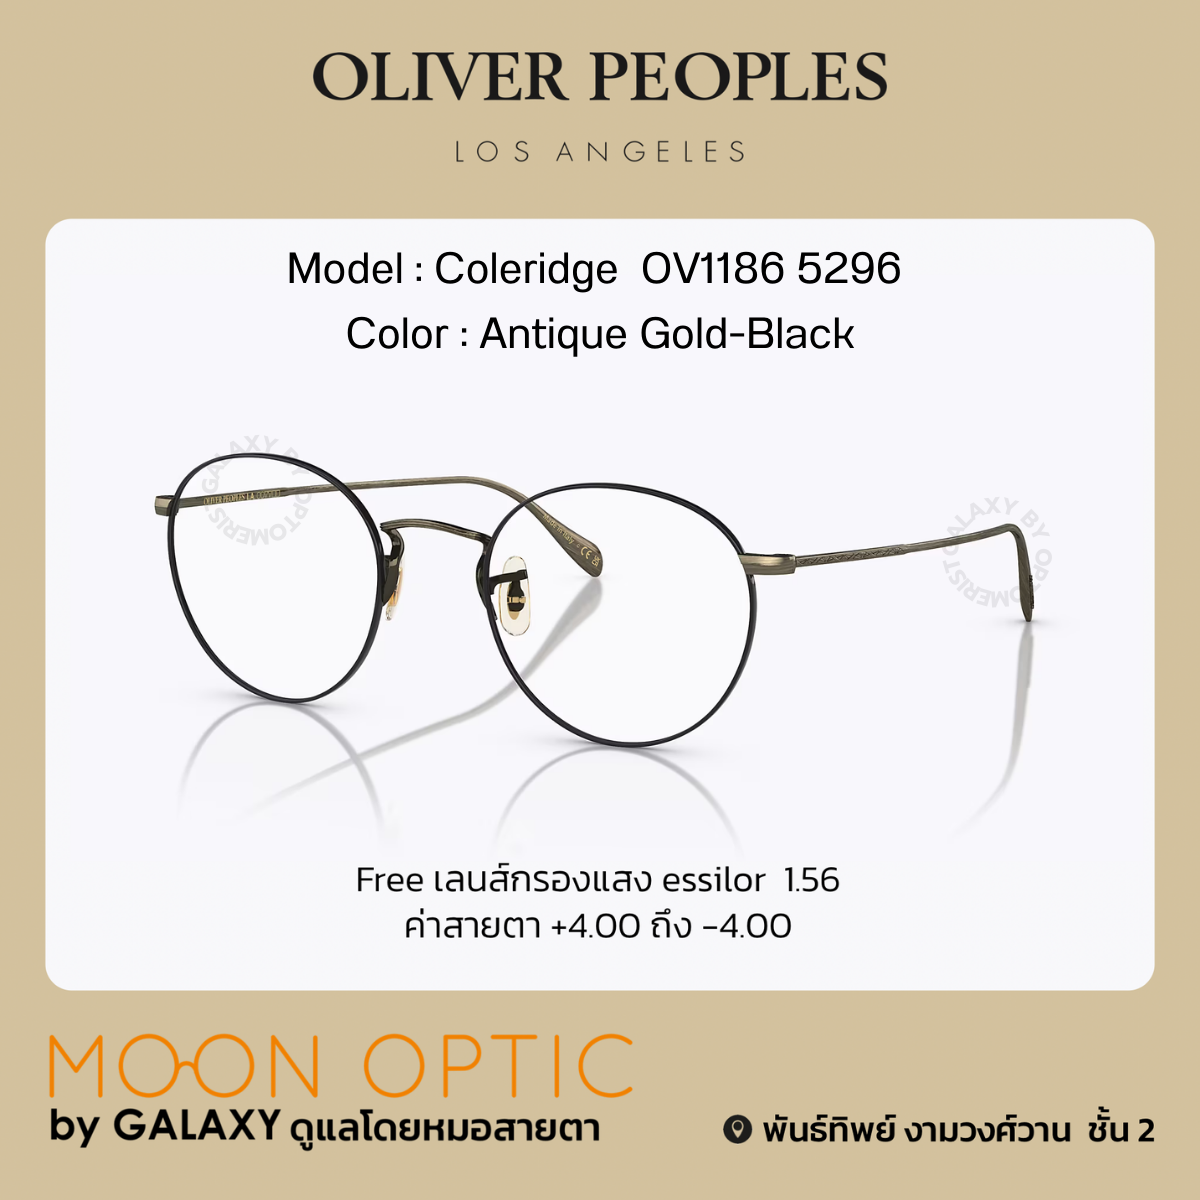 商品は状態確認 【oliver peoples】ov1186 5296 coleridge - メンズ